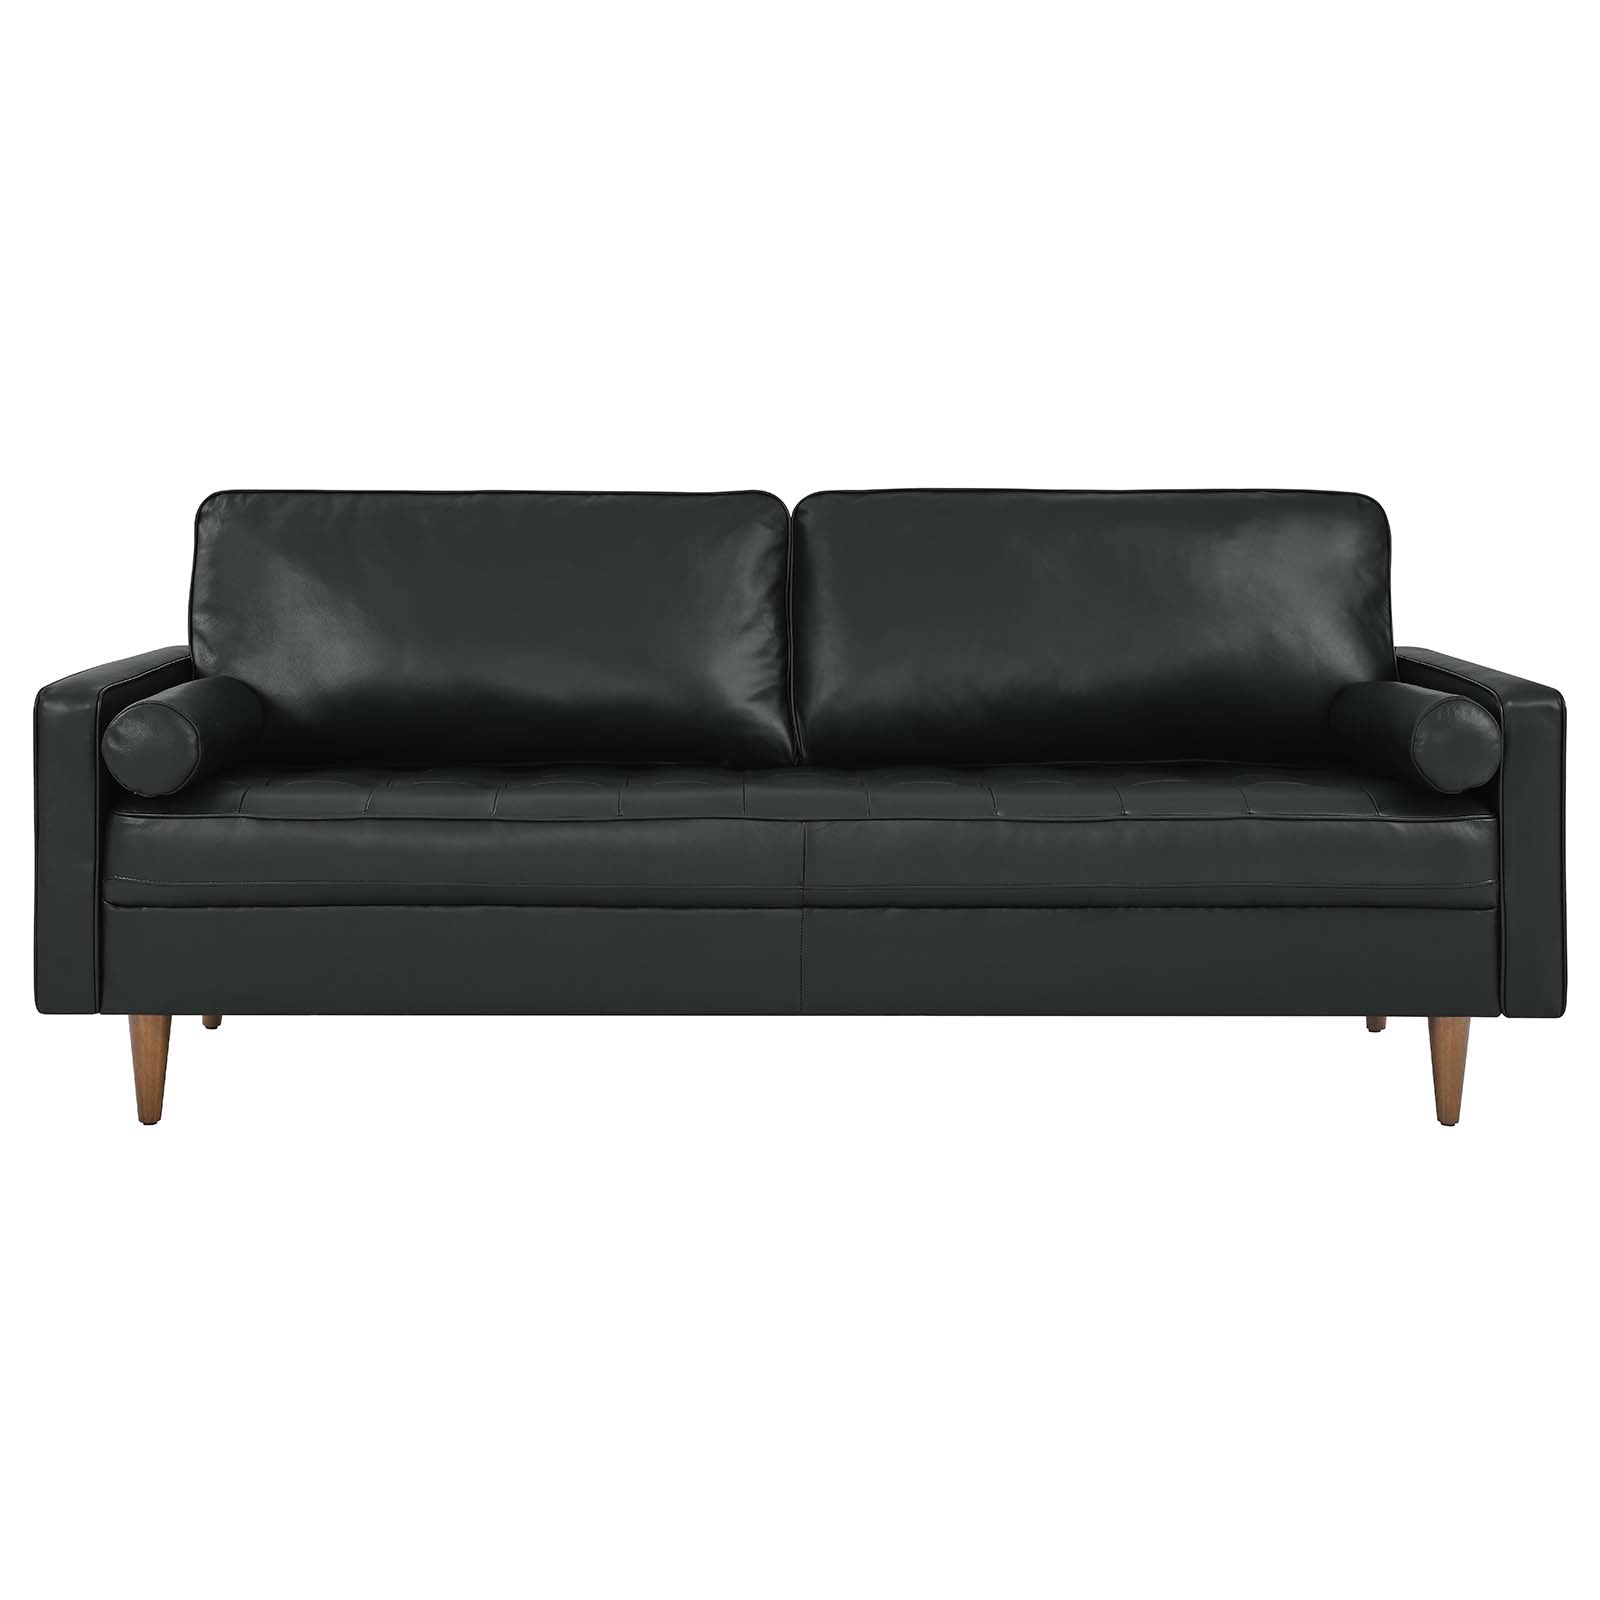 Modway Sofas & Couches - Valour 81" Leather Sofa Black